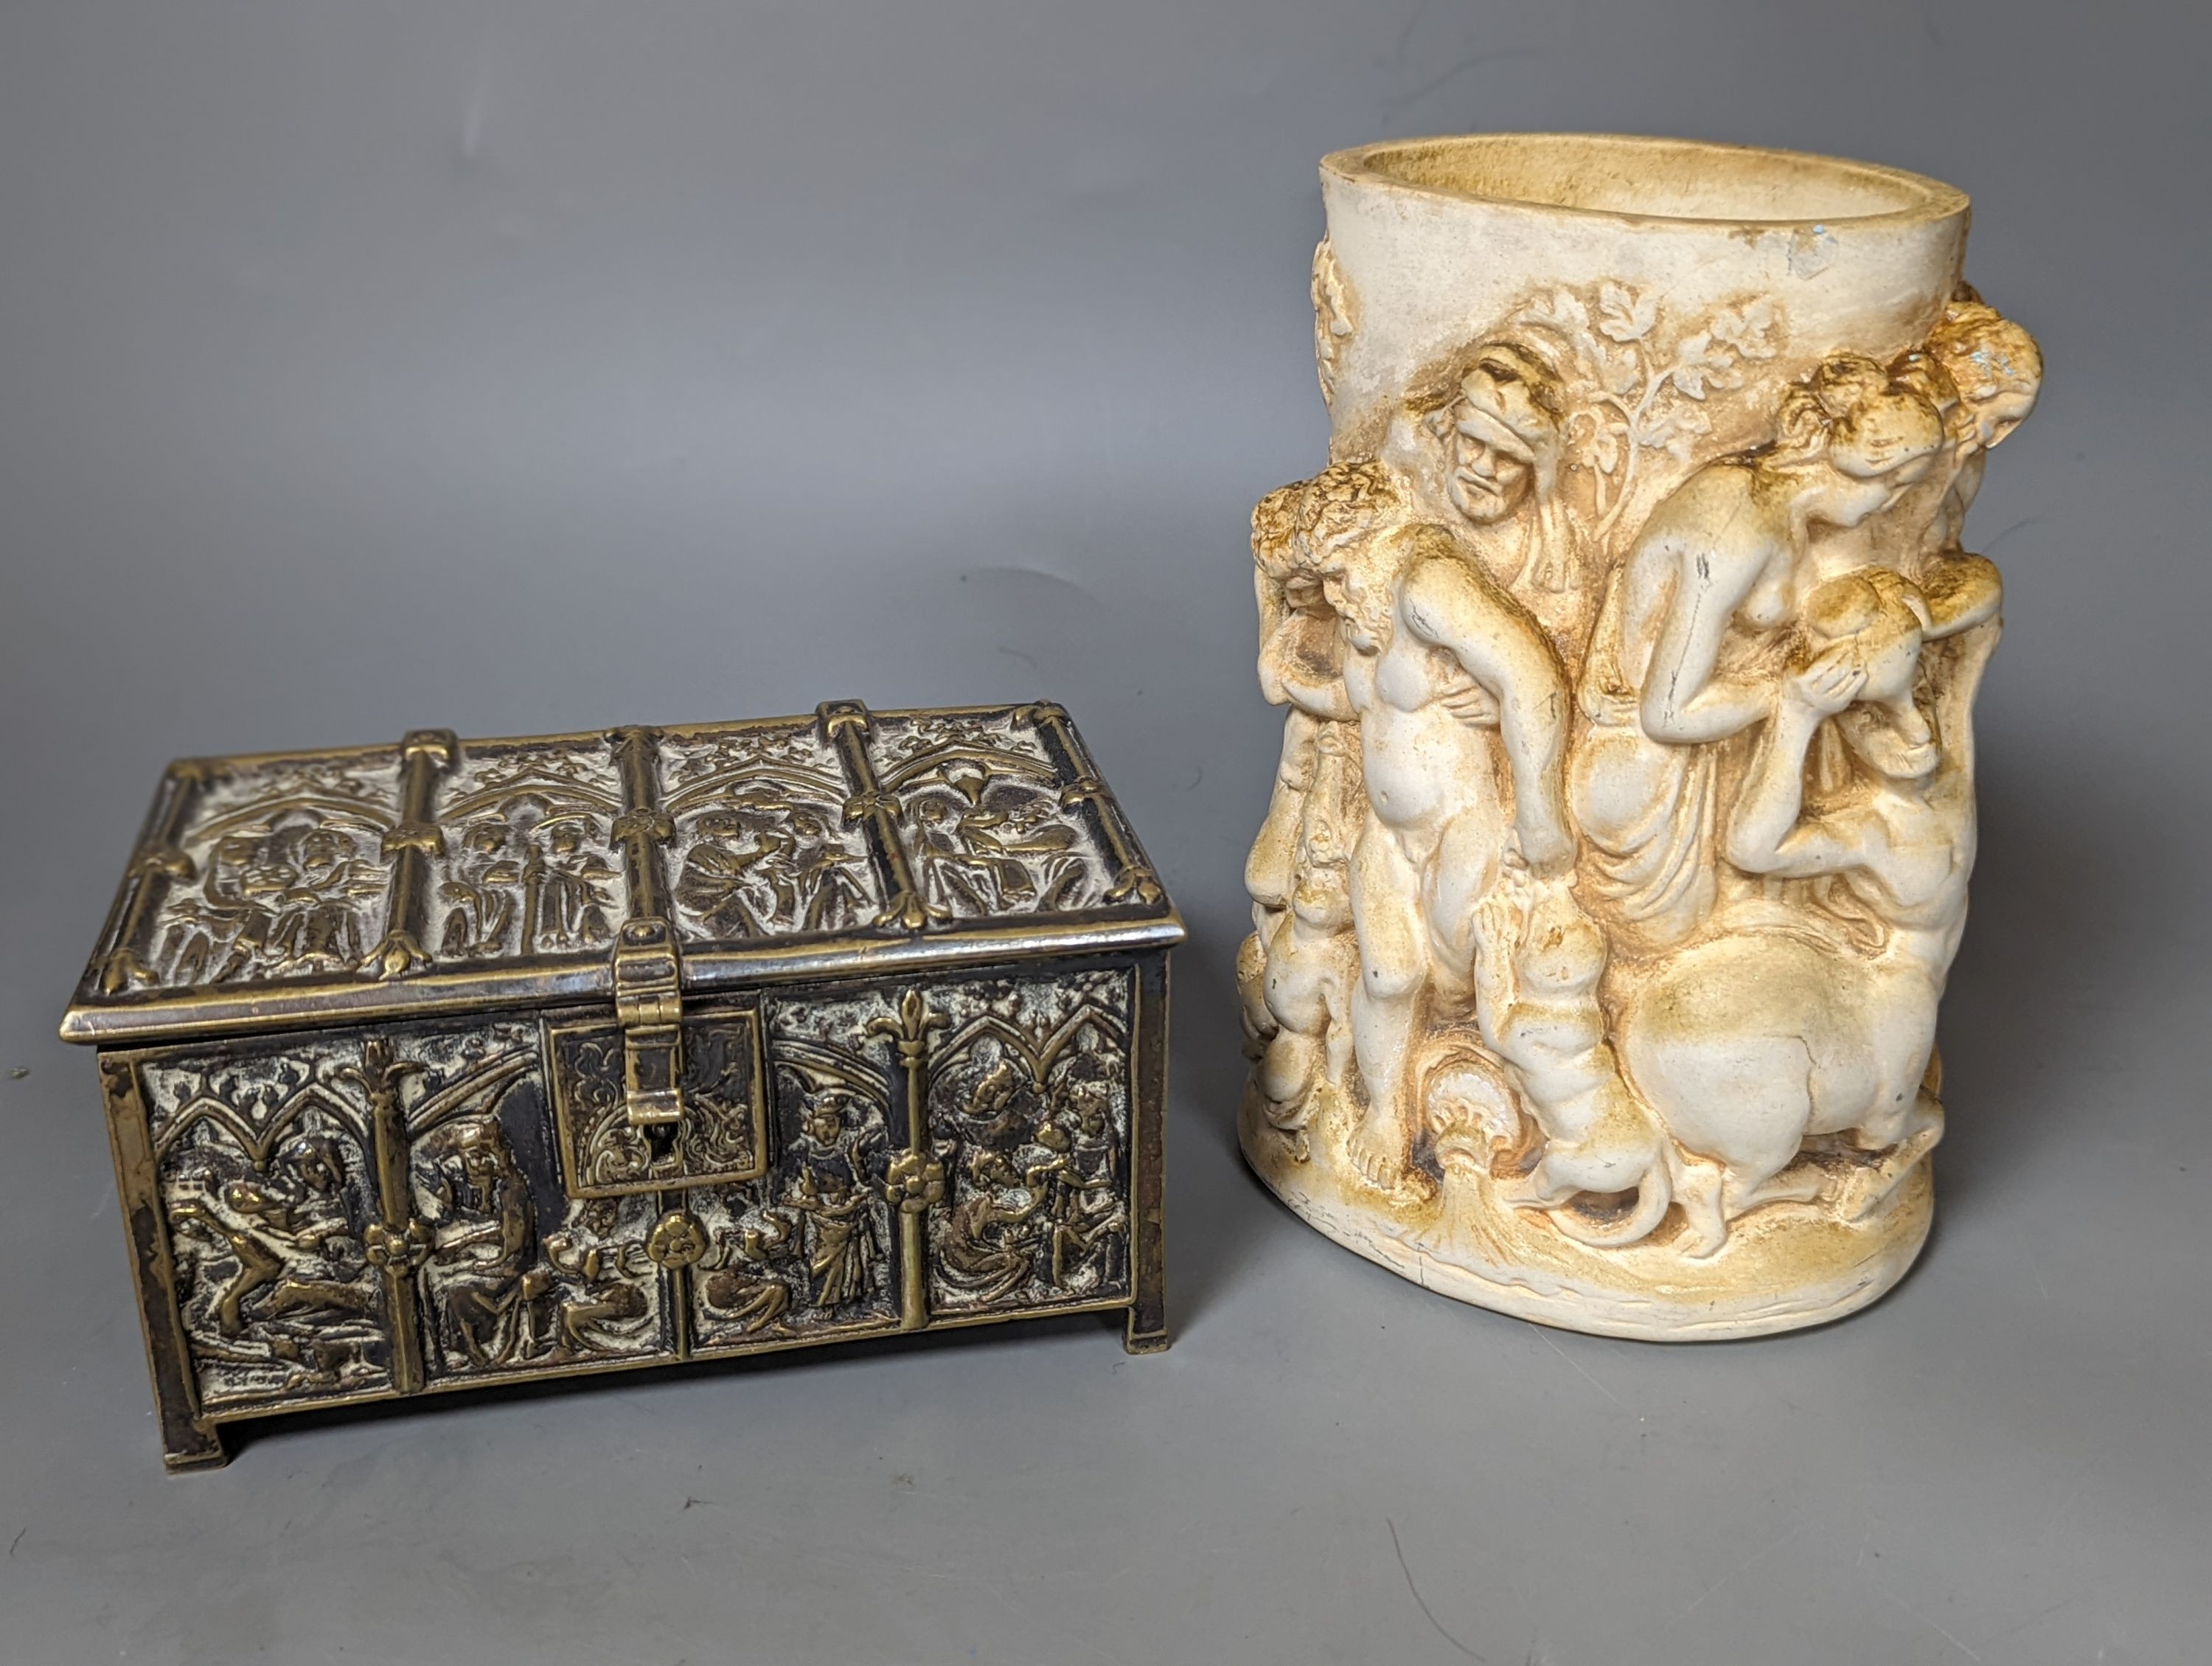 A classical figurative pot and a brass casket, 15.5cm